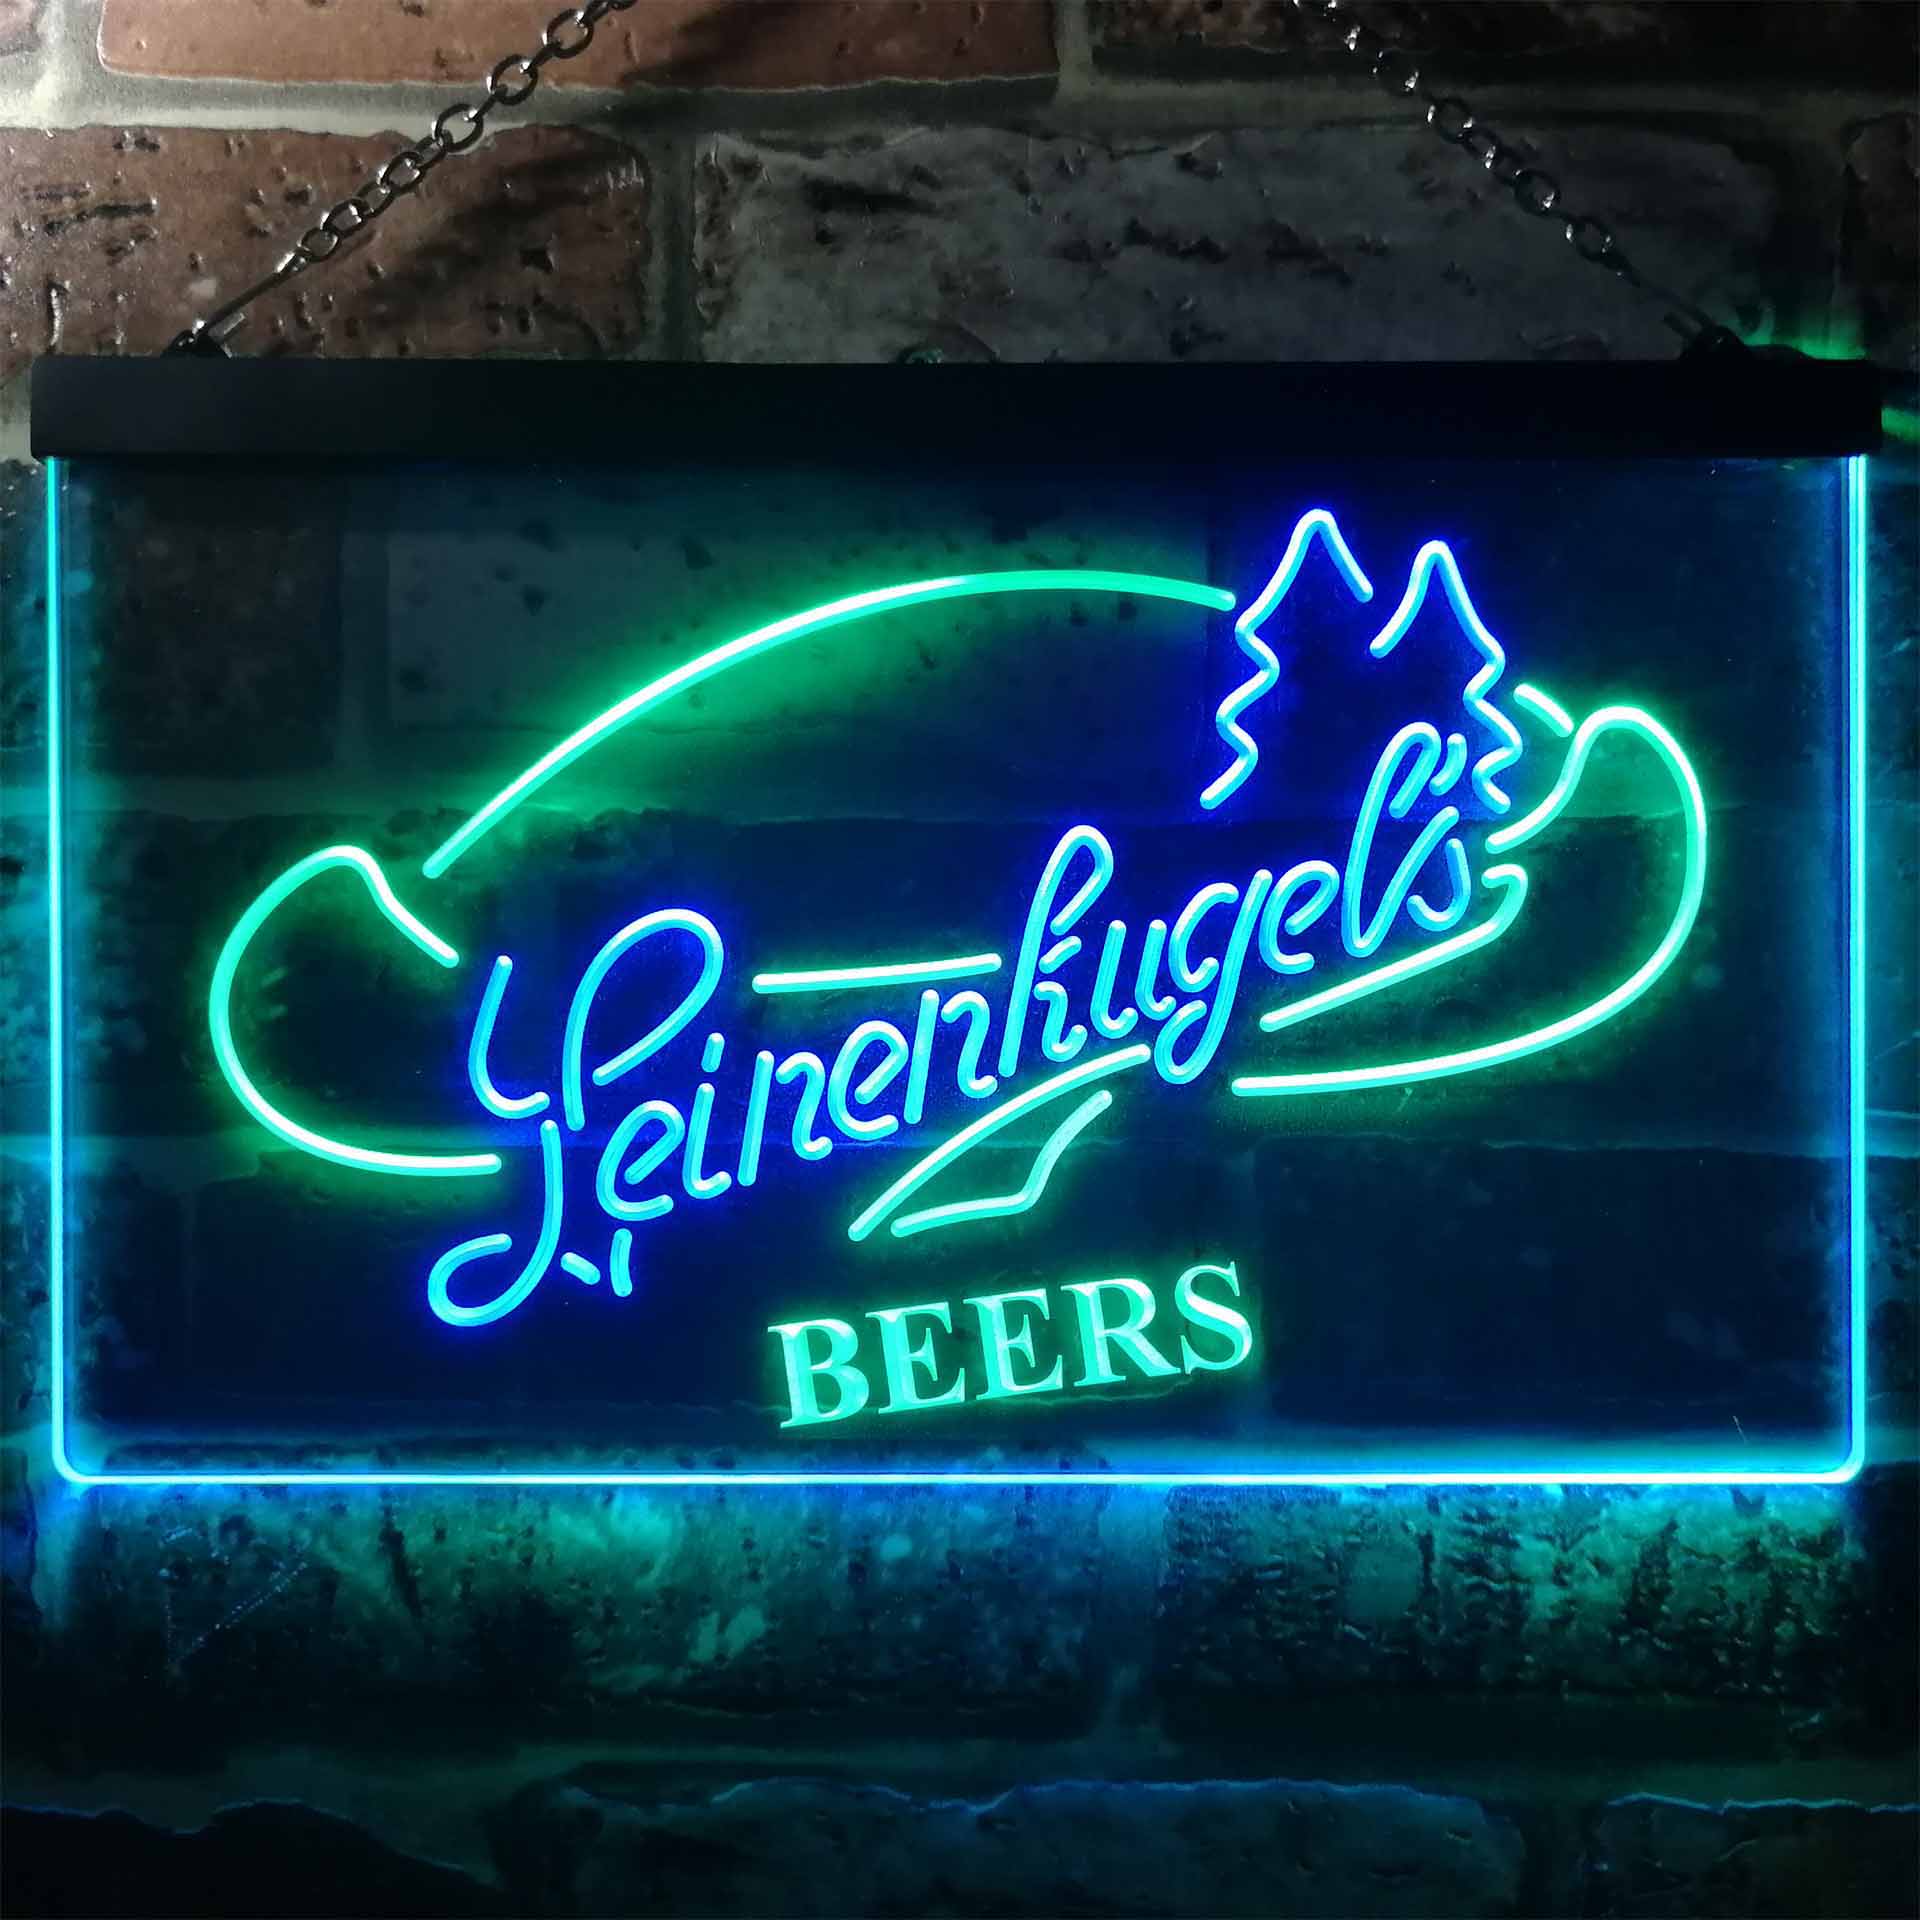 Leinenkugel's Beers Wisconsin Neon LED Sign